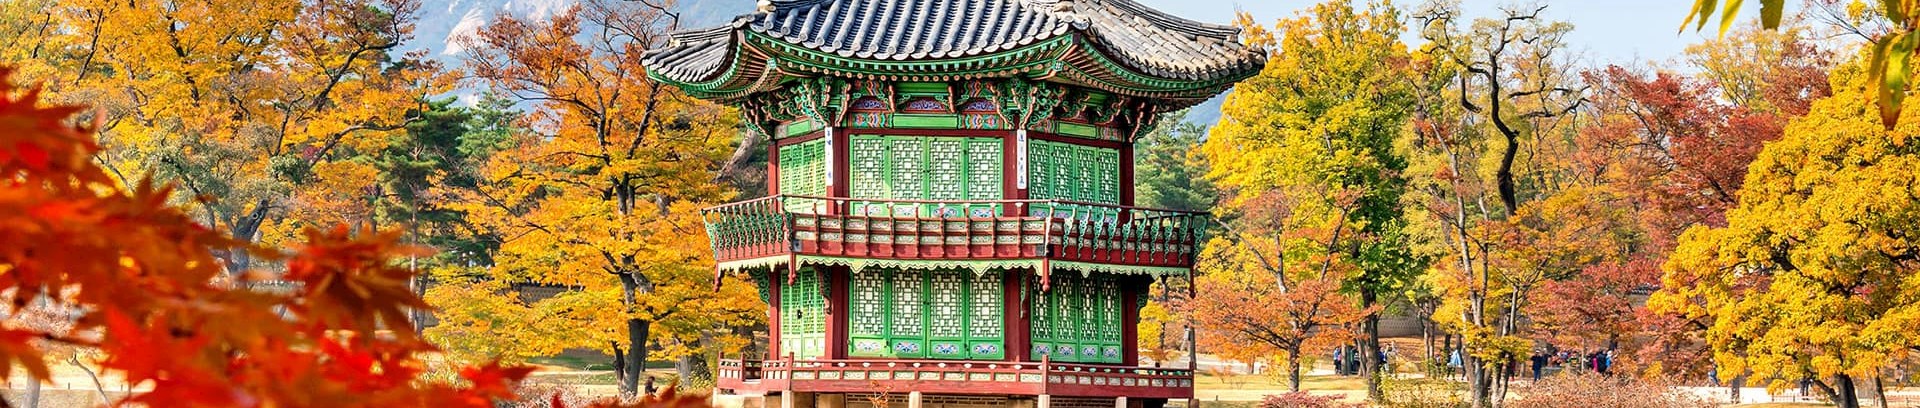 Billede af klassisk koreansk bygning